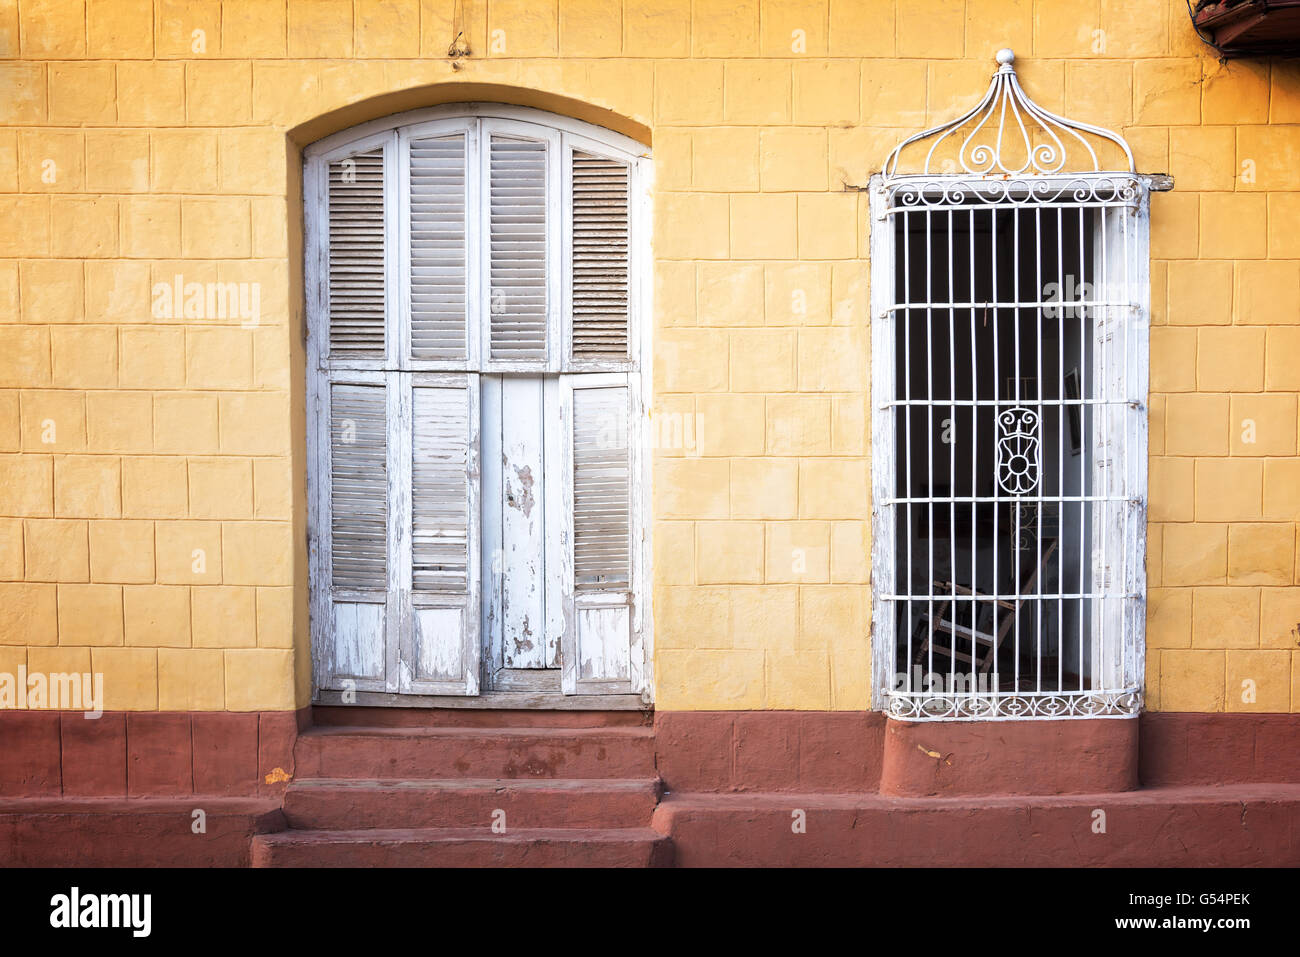 Colorful house facade in a street of Trinidad, Cuba Stock Photo